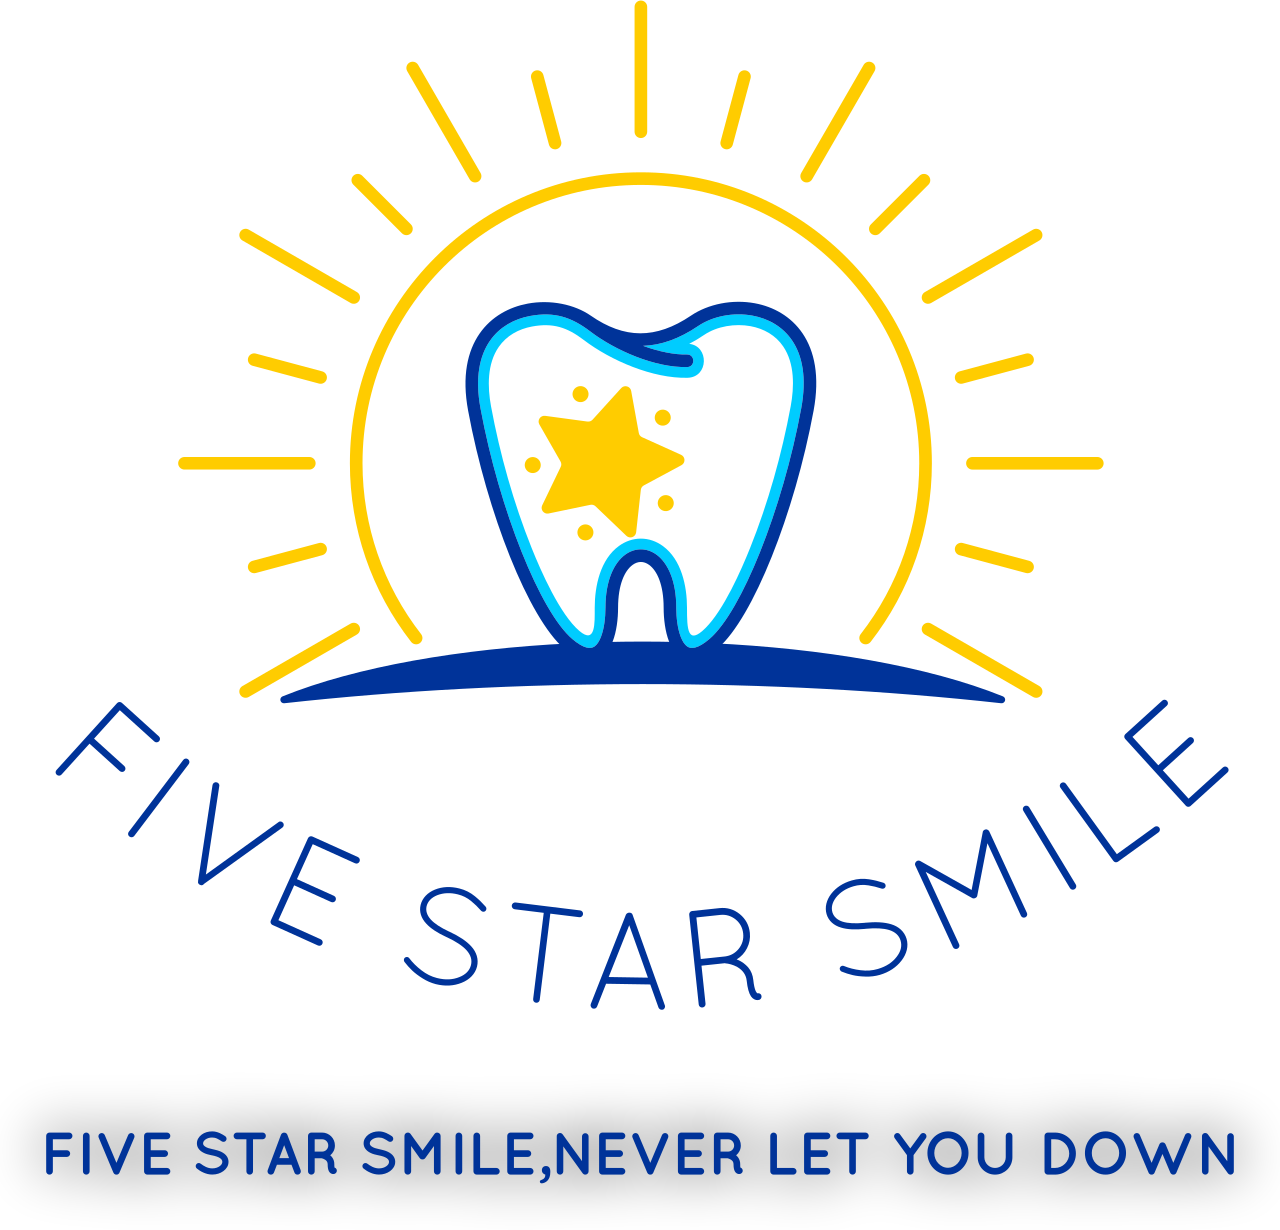 Five Star Smile's logo